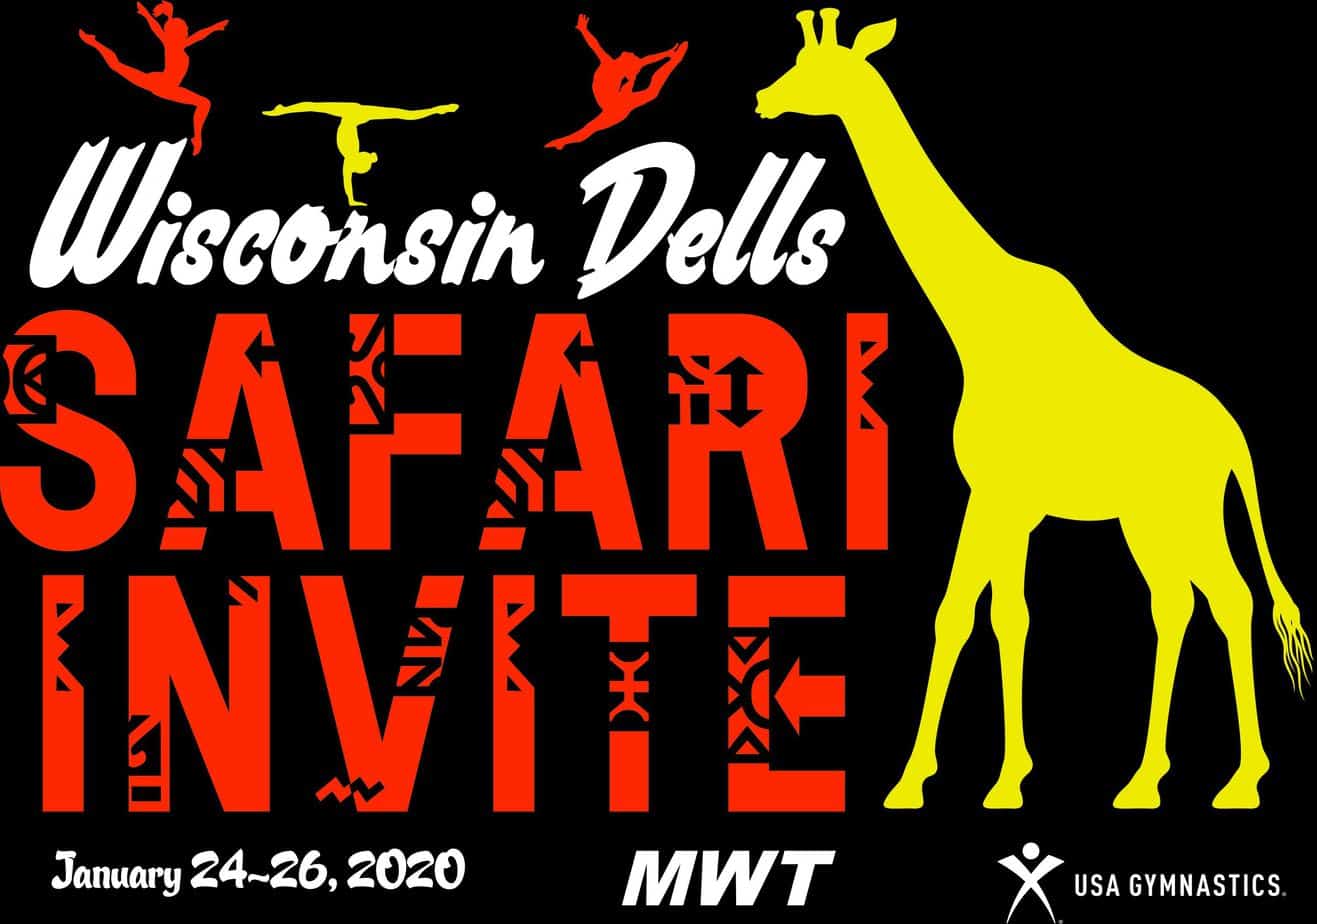 safari invite wisconsin dells